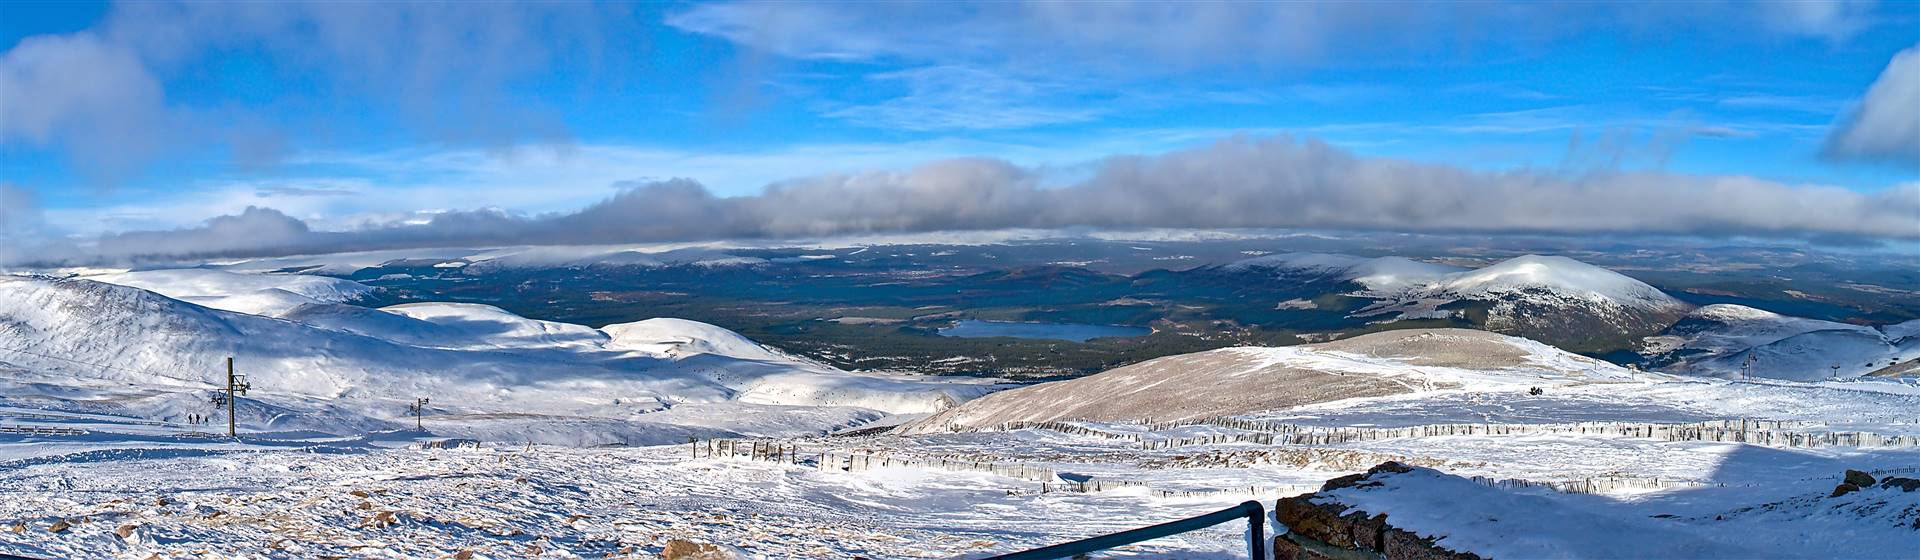 <img src="cairngormmountainspanoramic©shutterstock.jpeg" alt="Cairngorm Mountains"/>